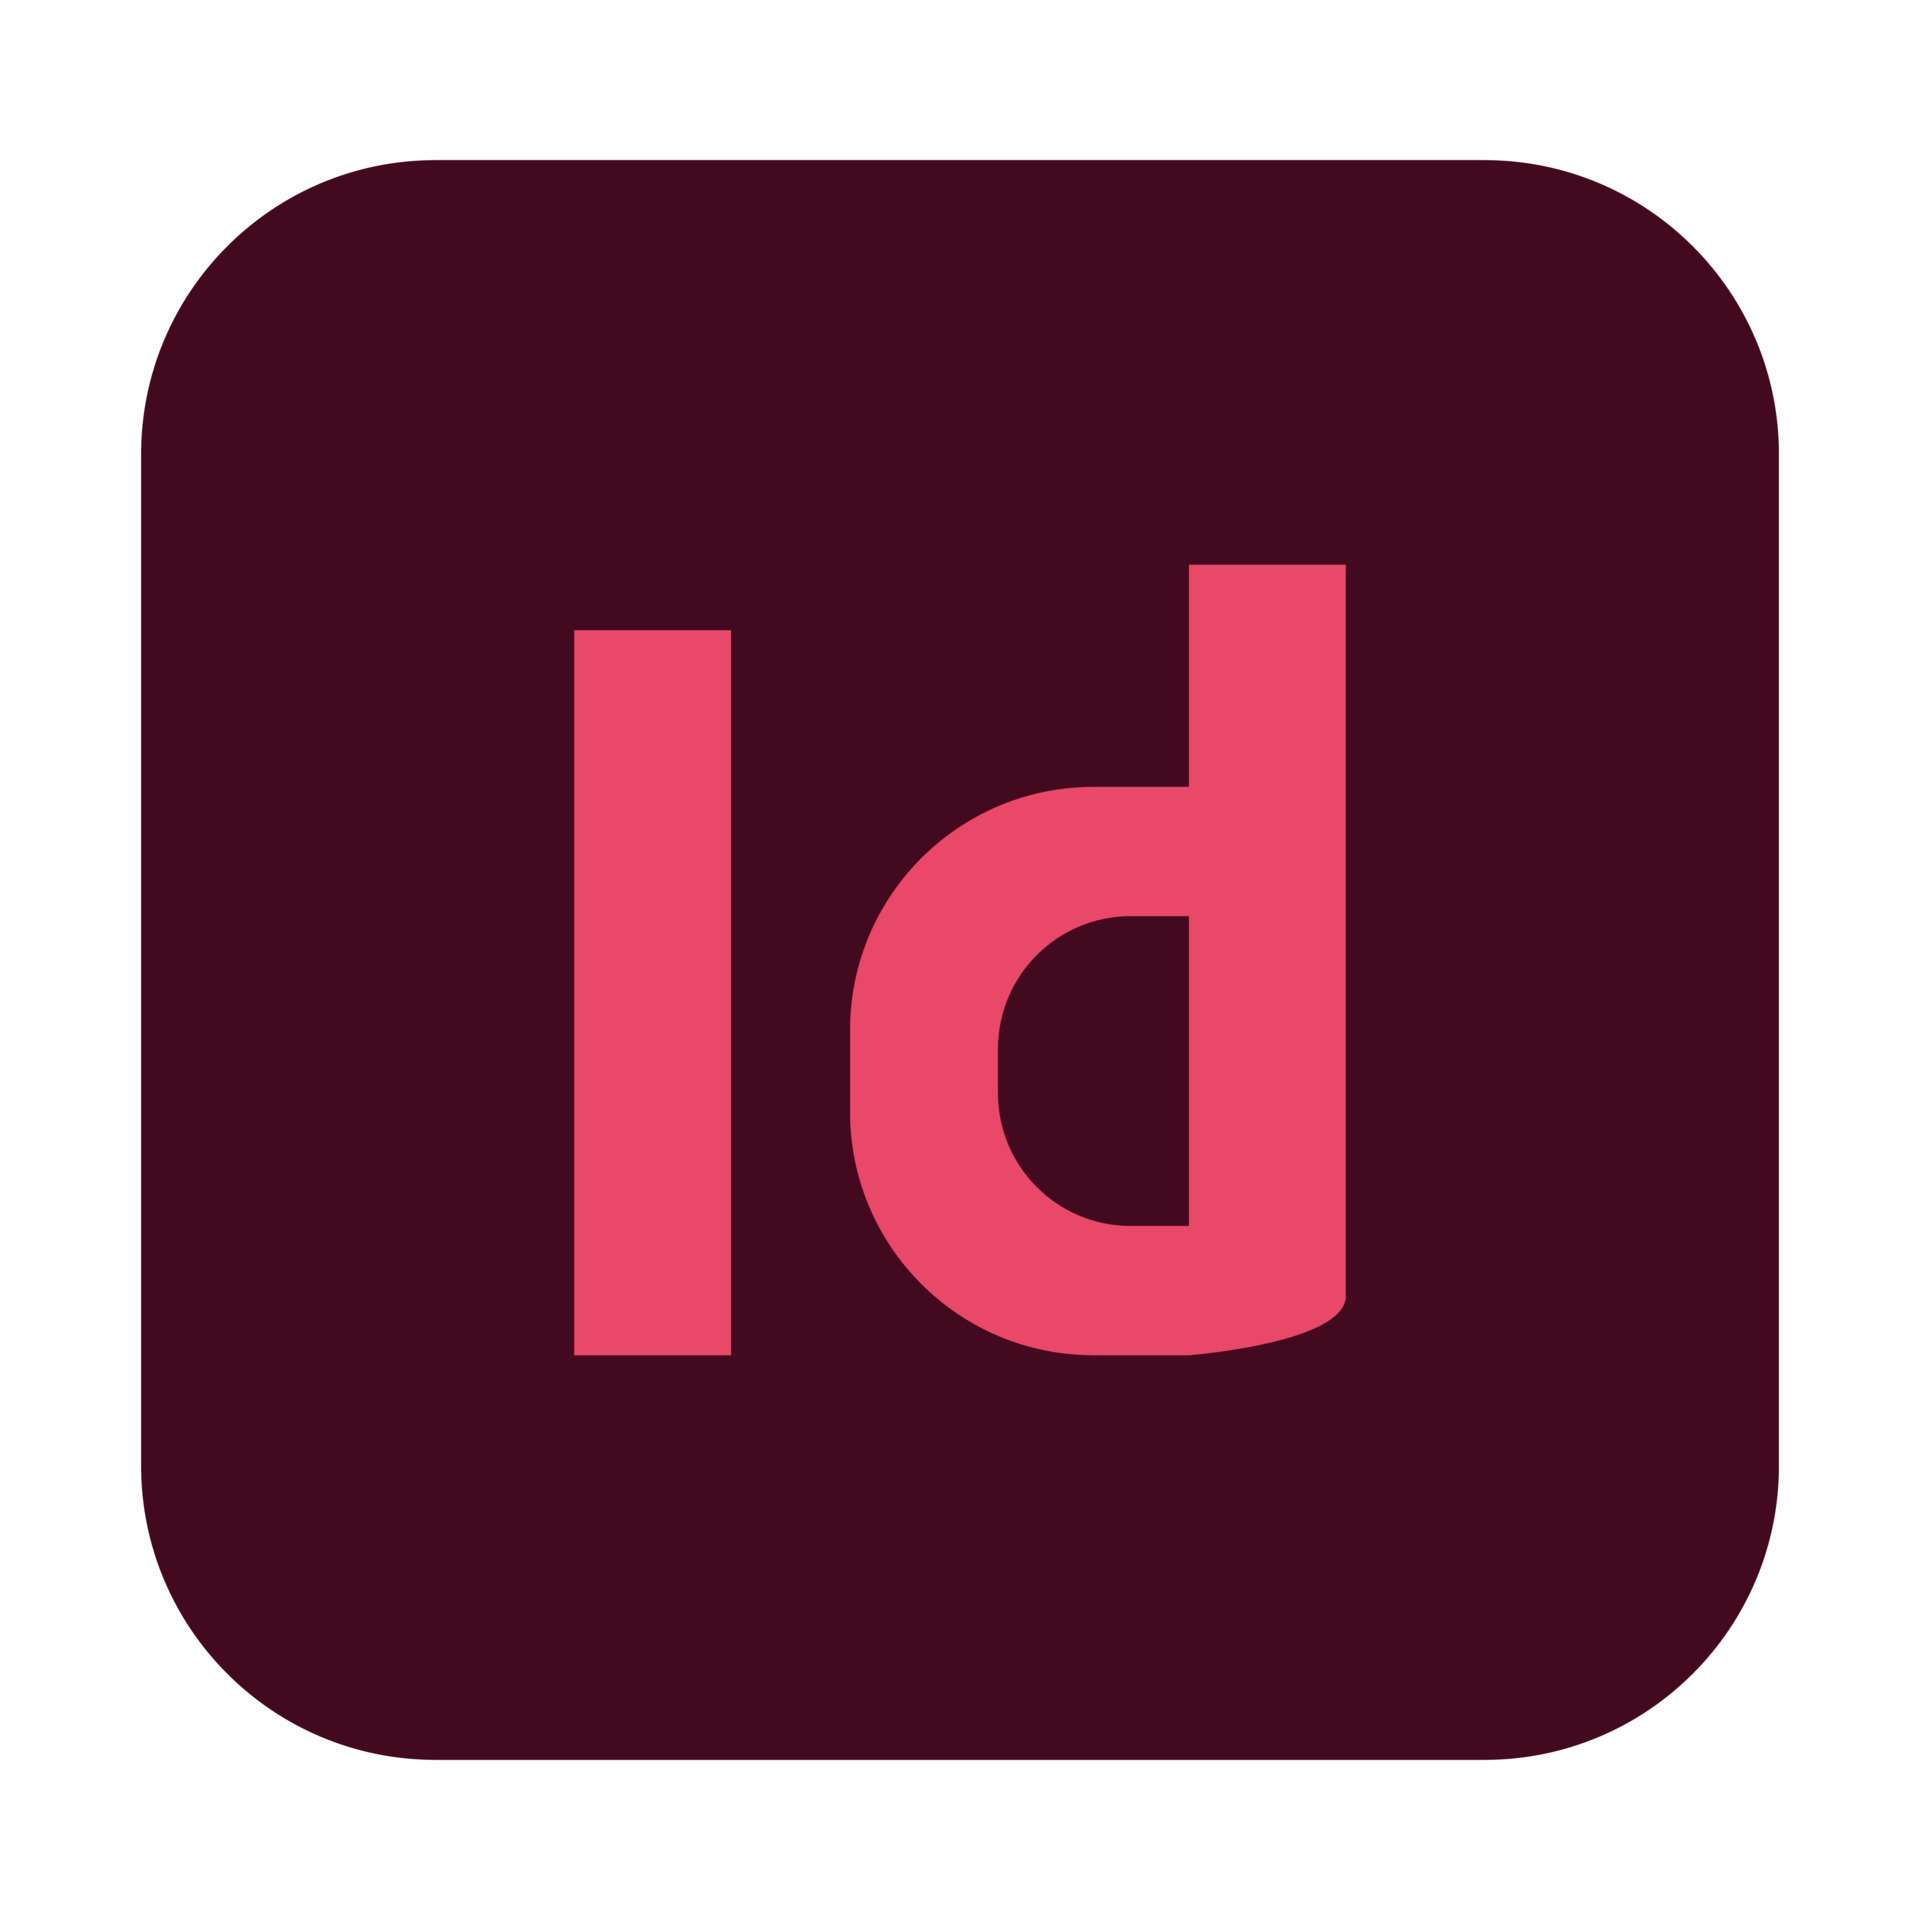 Adobe InDesign: A Graphic Designer’s Dream Tool